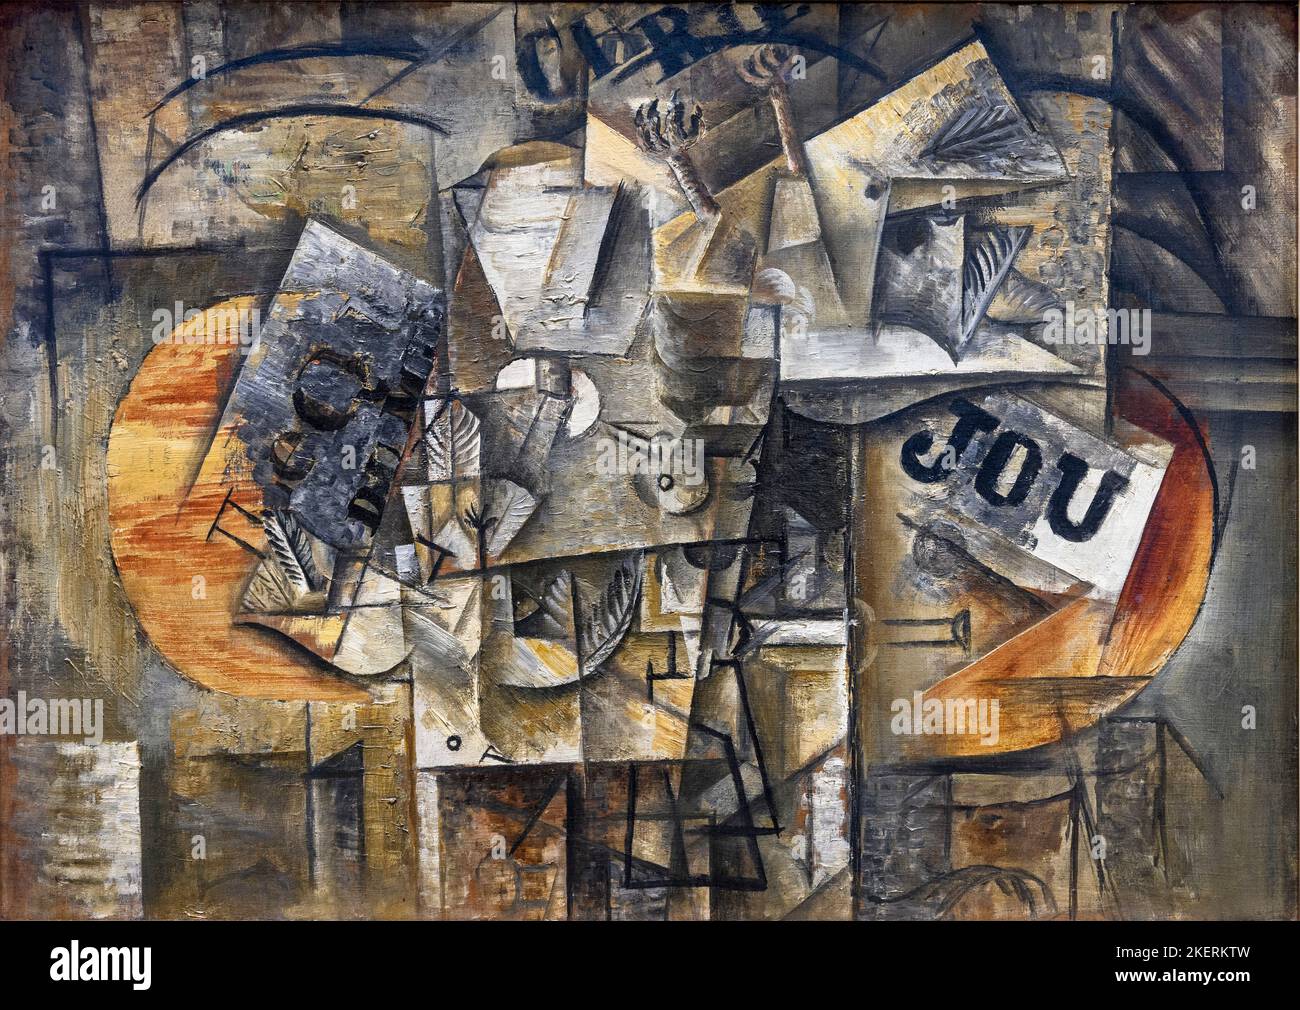 Oiseaux morts, huile sur toile, 1912, par l'artiste espagnol Pablo Picasso 1881-1973. Banque D'Images